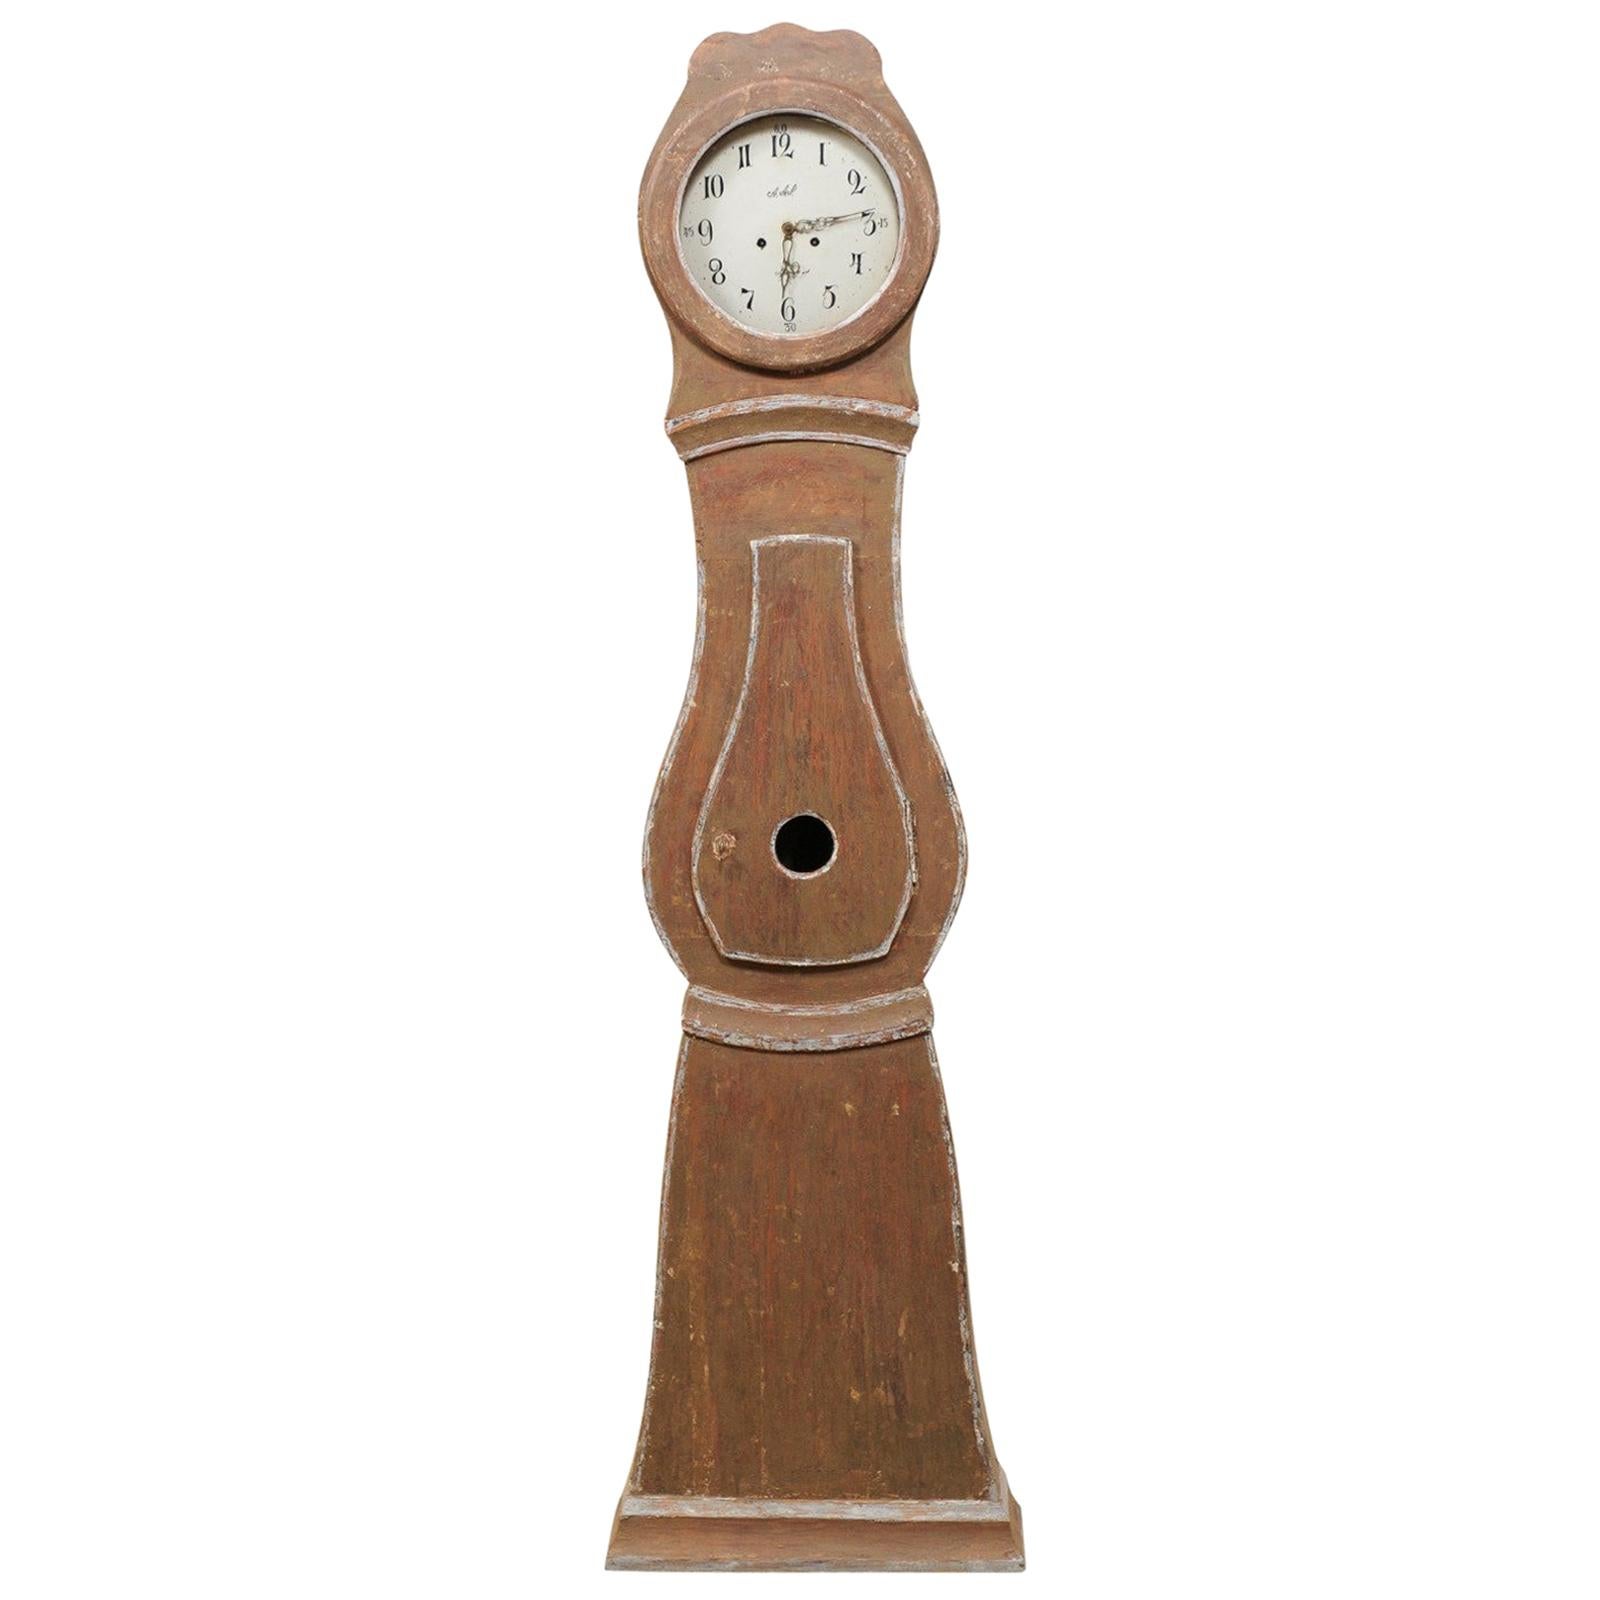 Horloge Mora suédoise du 19ème siècle avec couronne festonnée et cloche en forme de goutte d'eau